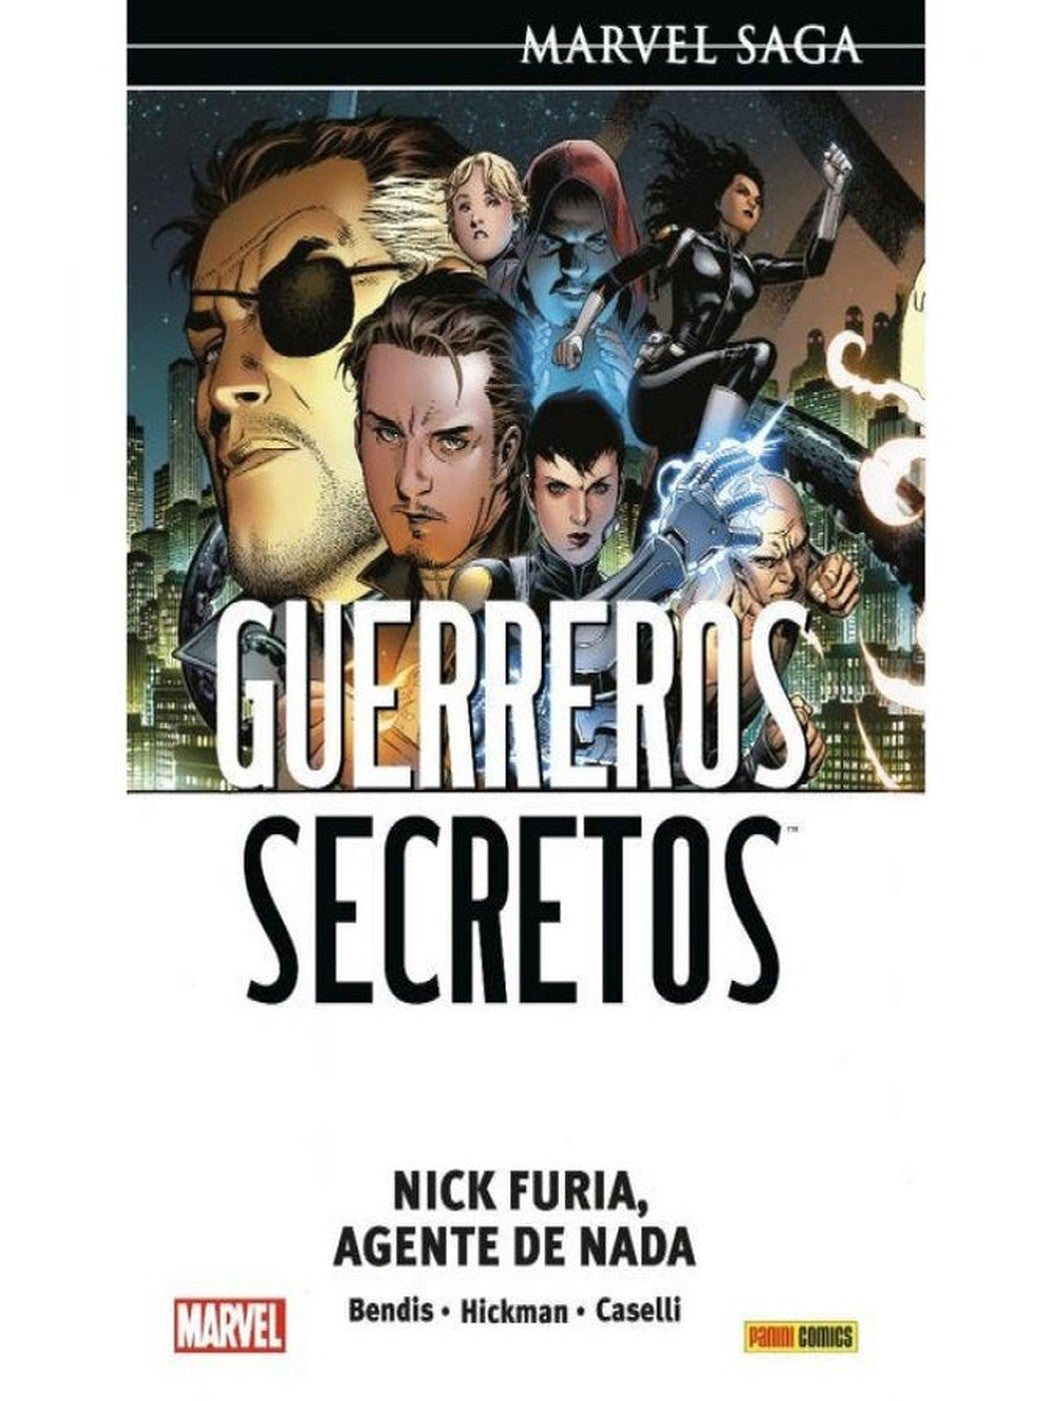 Marvel Saga. Guerreros Secretos: Nick Furia, Agente De Nada